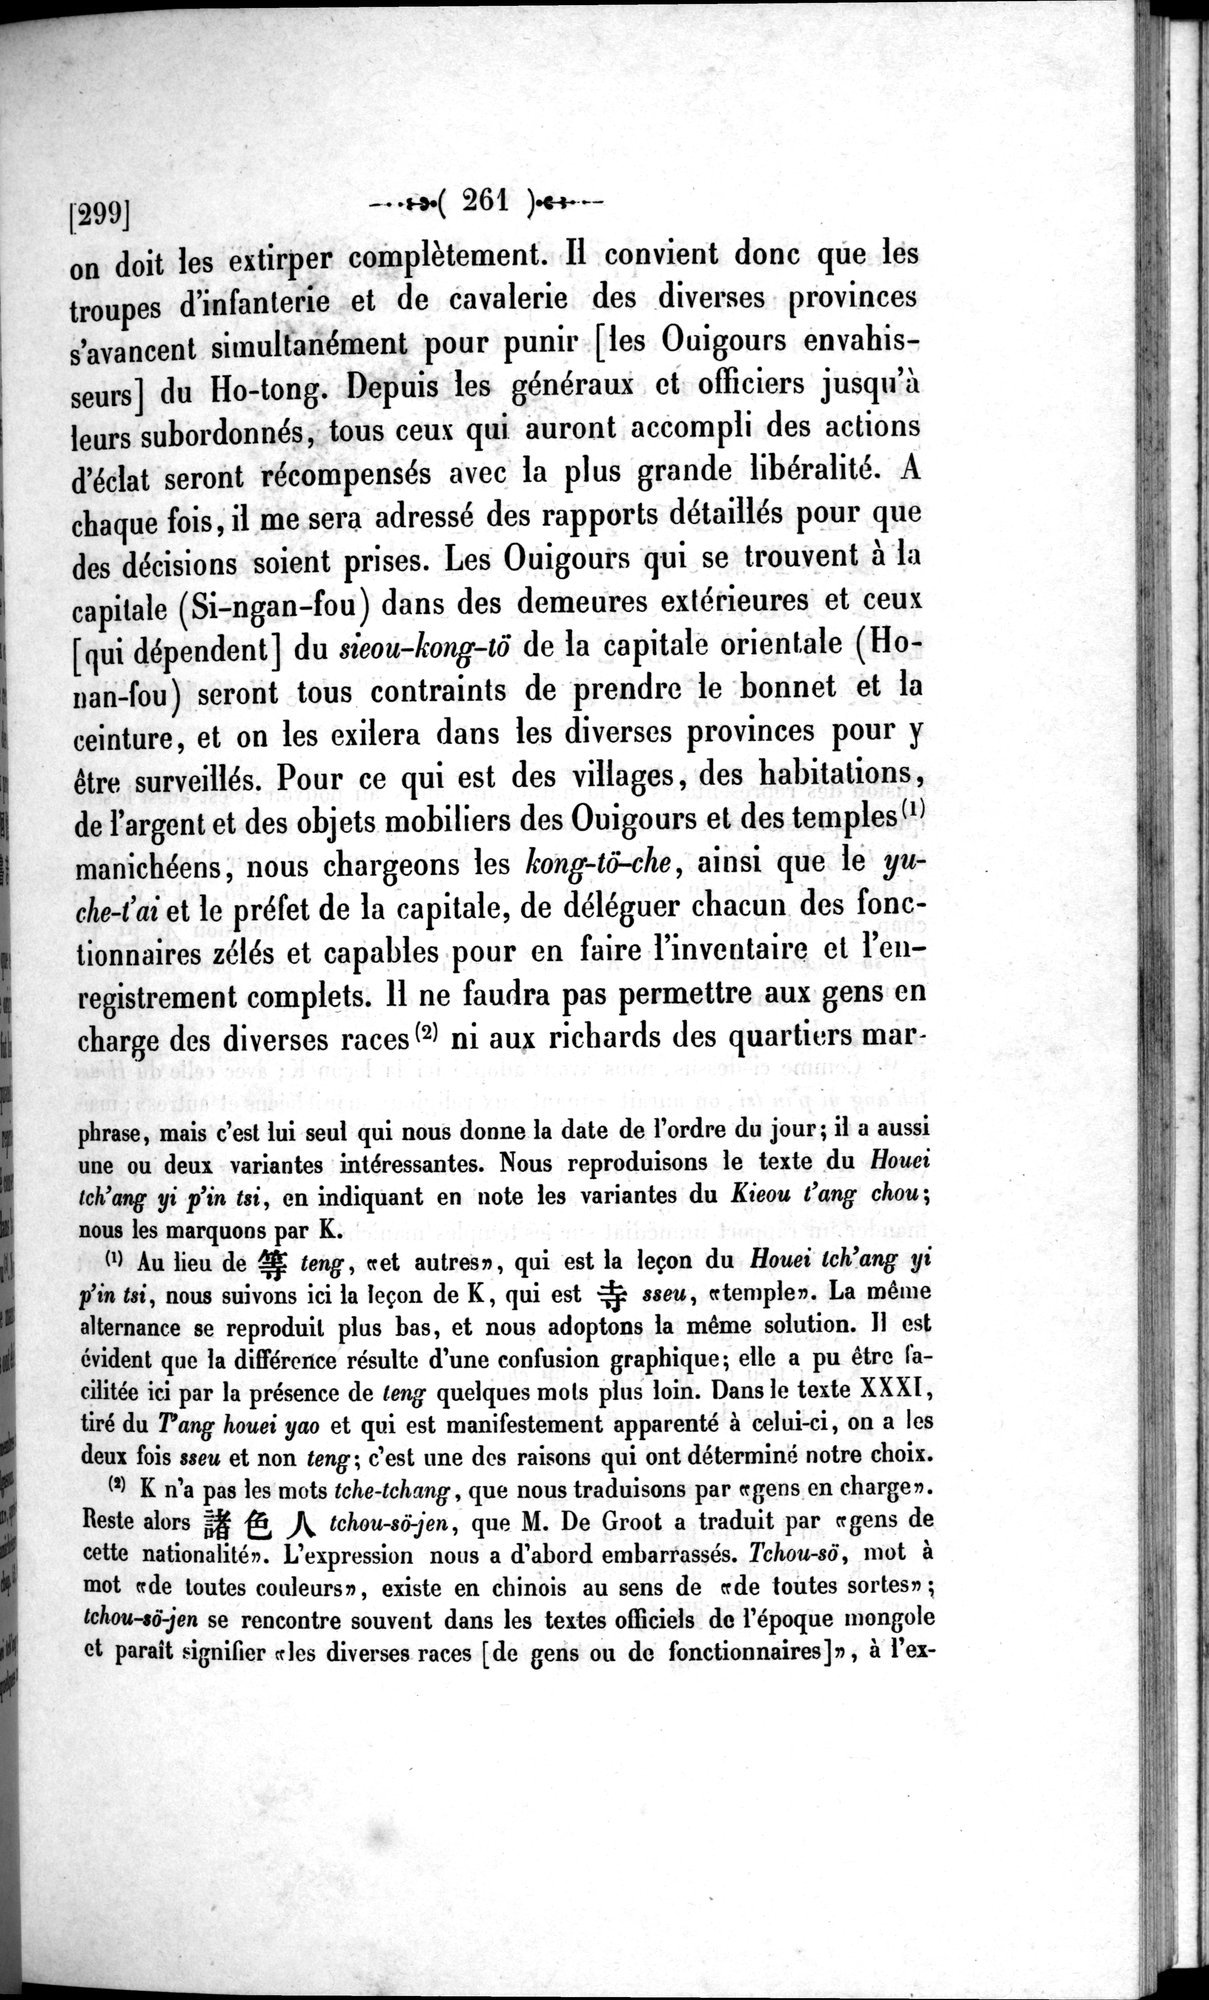 Un traité manichéen retrouvé en Chine : vol.1 / Page 271 (Grayscale High Resolution Image)